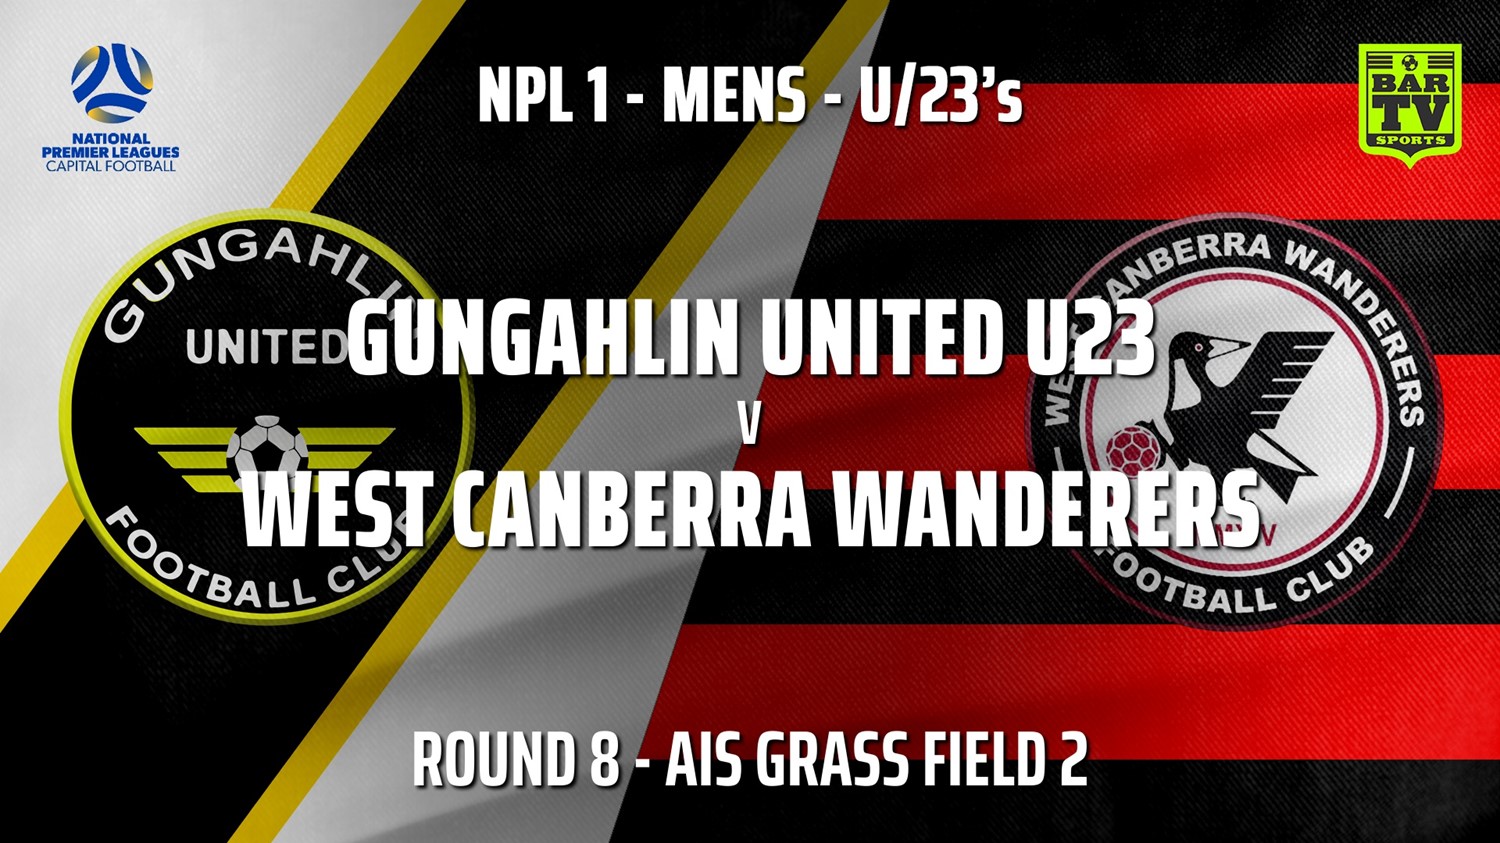 210530-NPL1 U23 Capital Round 8 - Gungahlin United U23 v West Canberra Wanderers U23s Minigame Slate Image